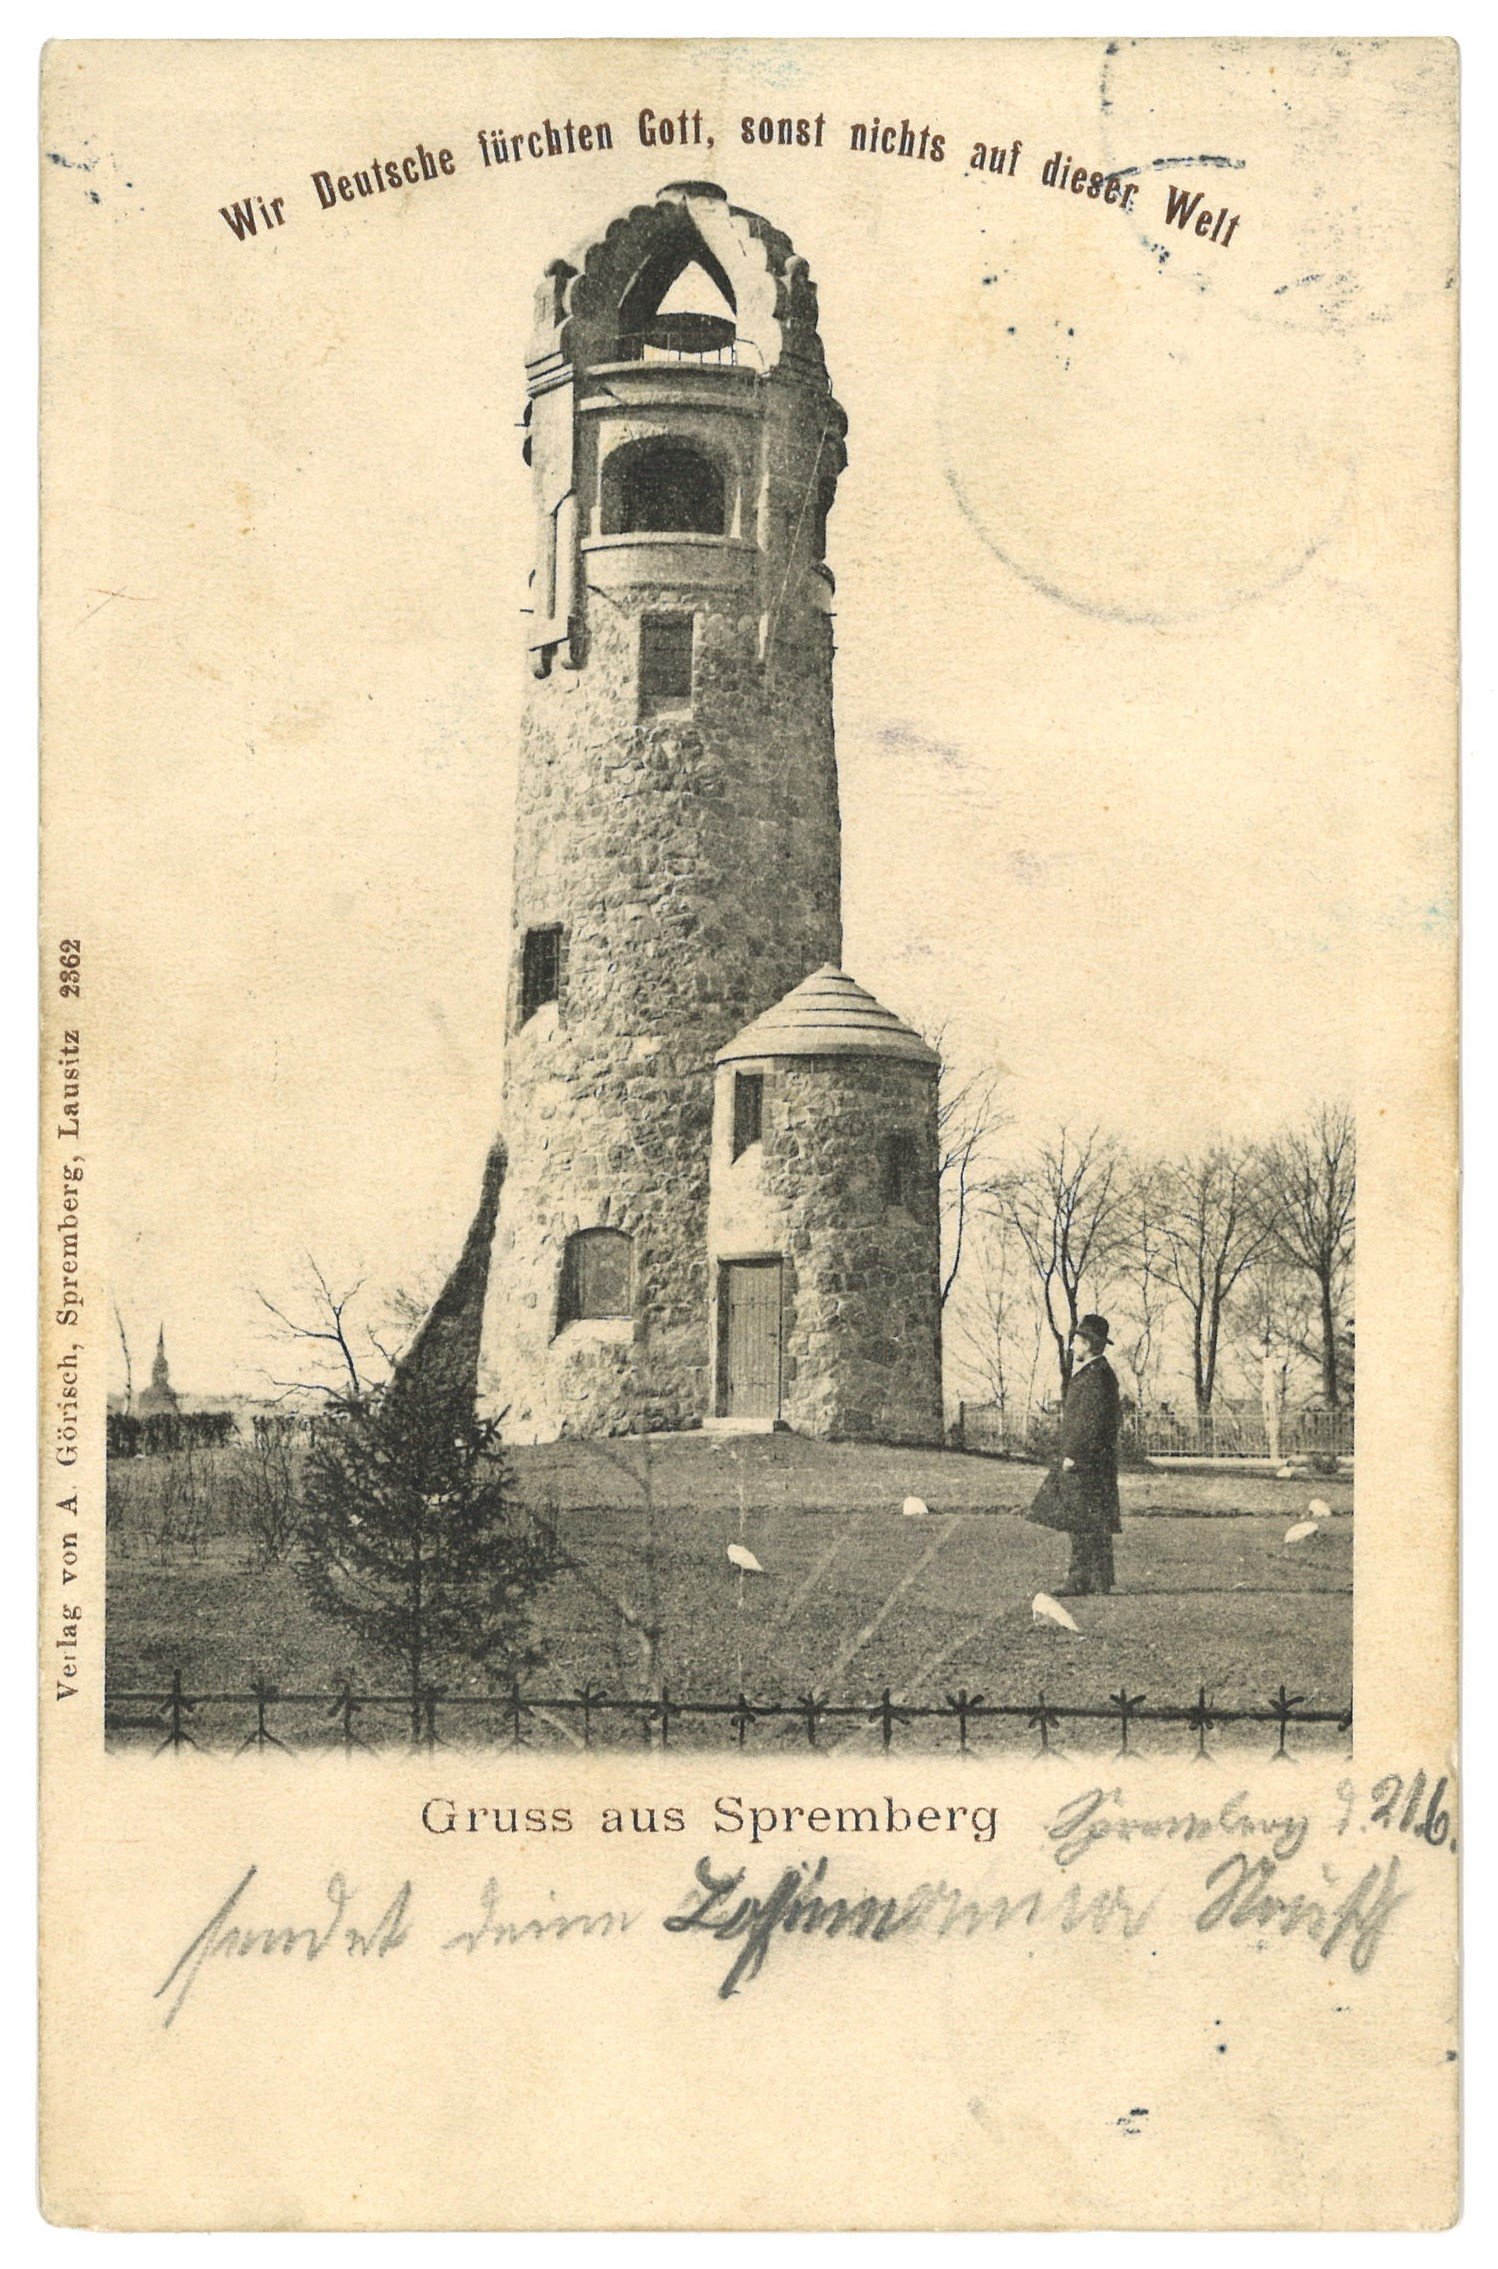 Spremberg: Bismarckturm (Landesgeschichtliche Vereinigung für die Mark Brandenburg e.V. CC BY)